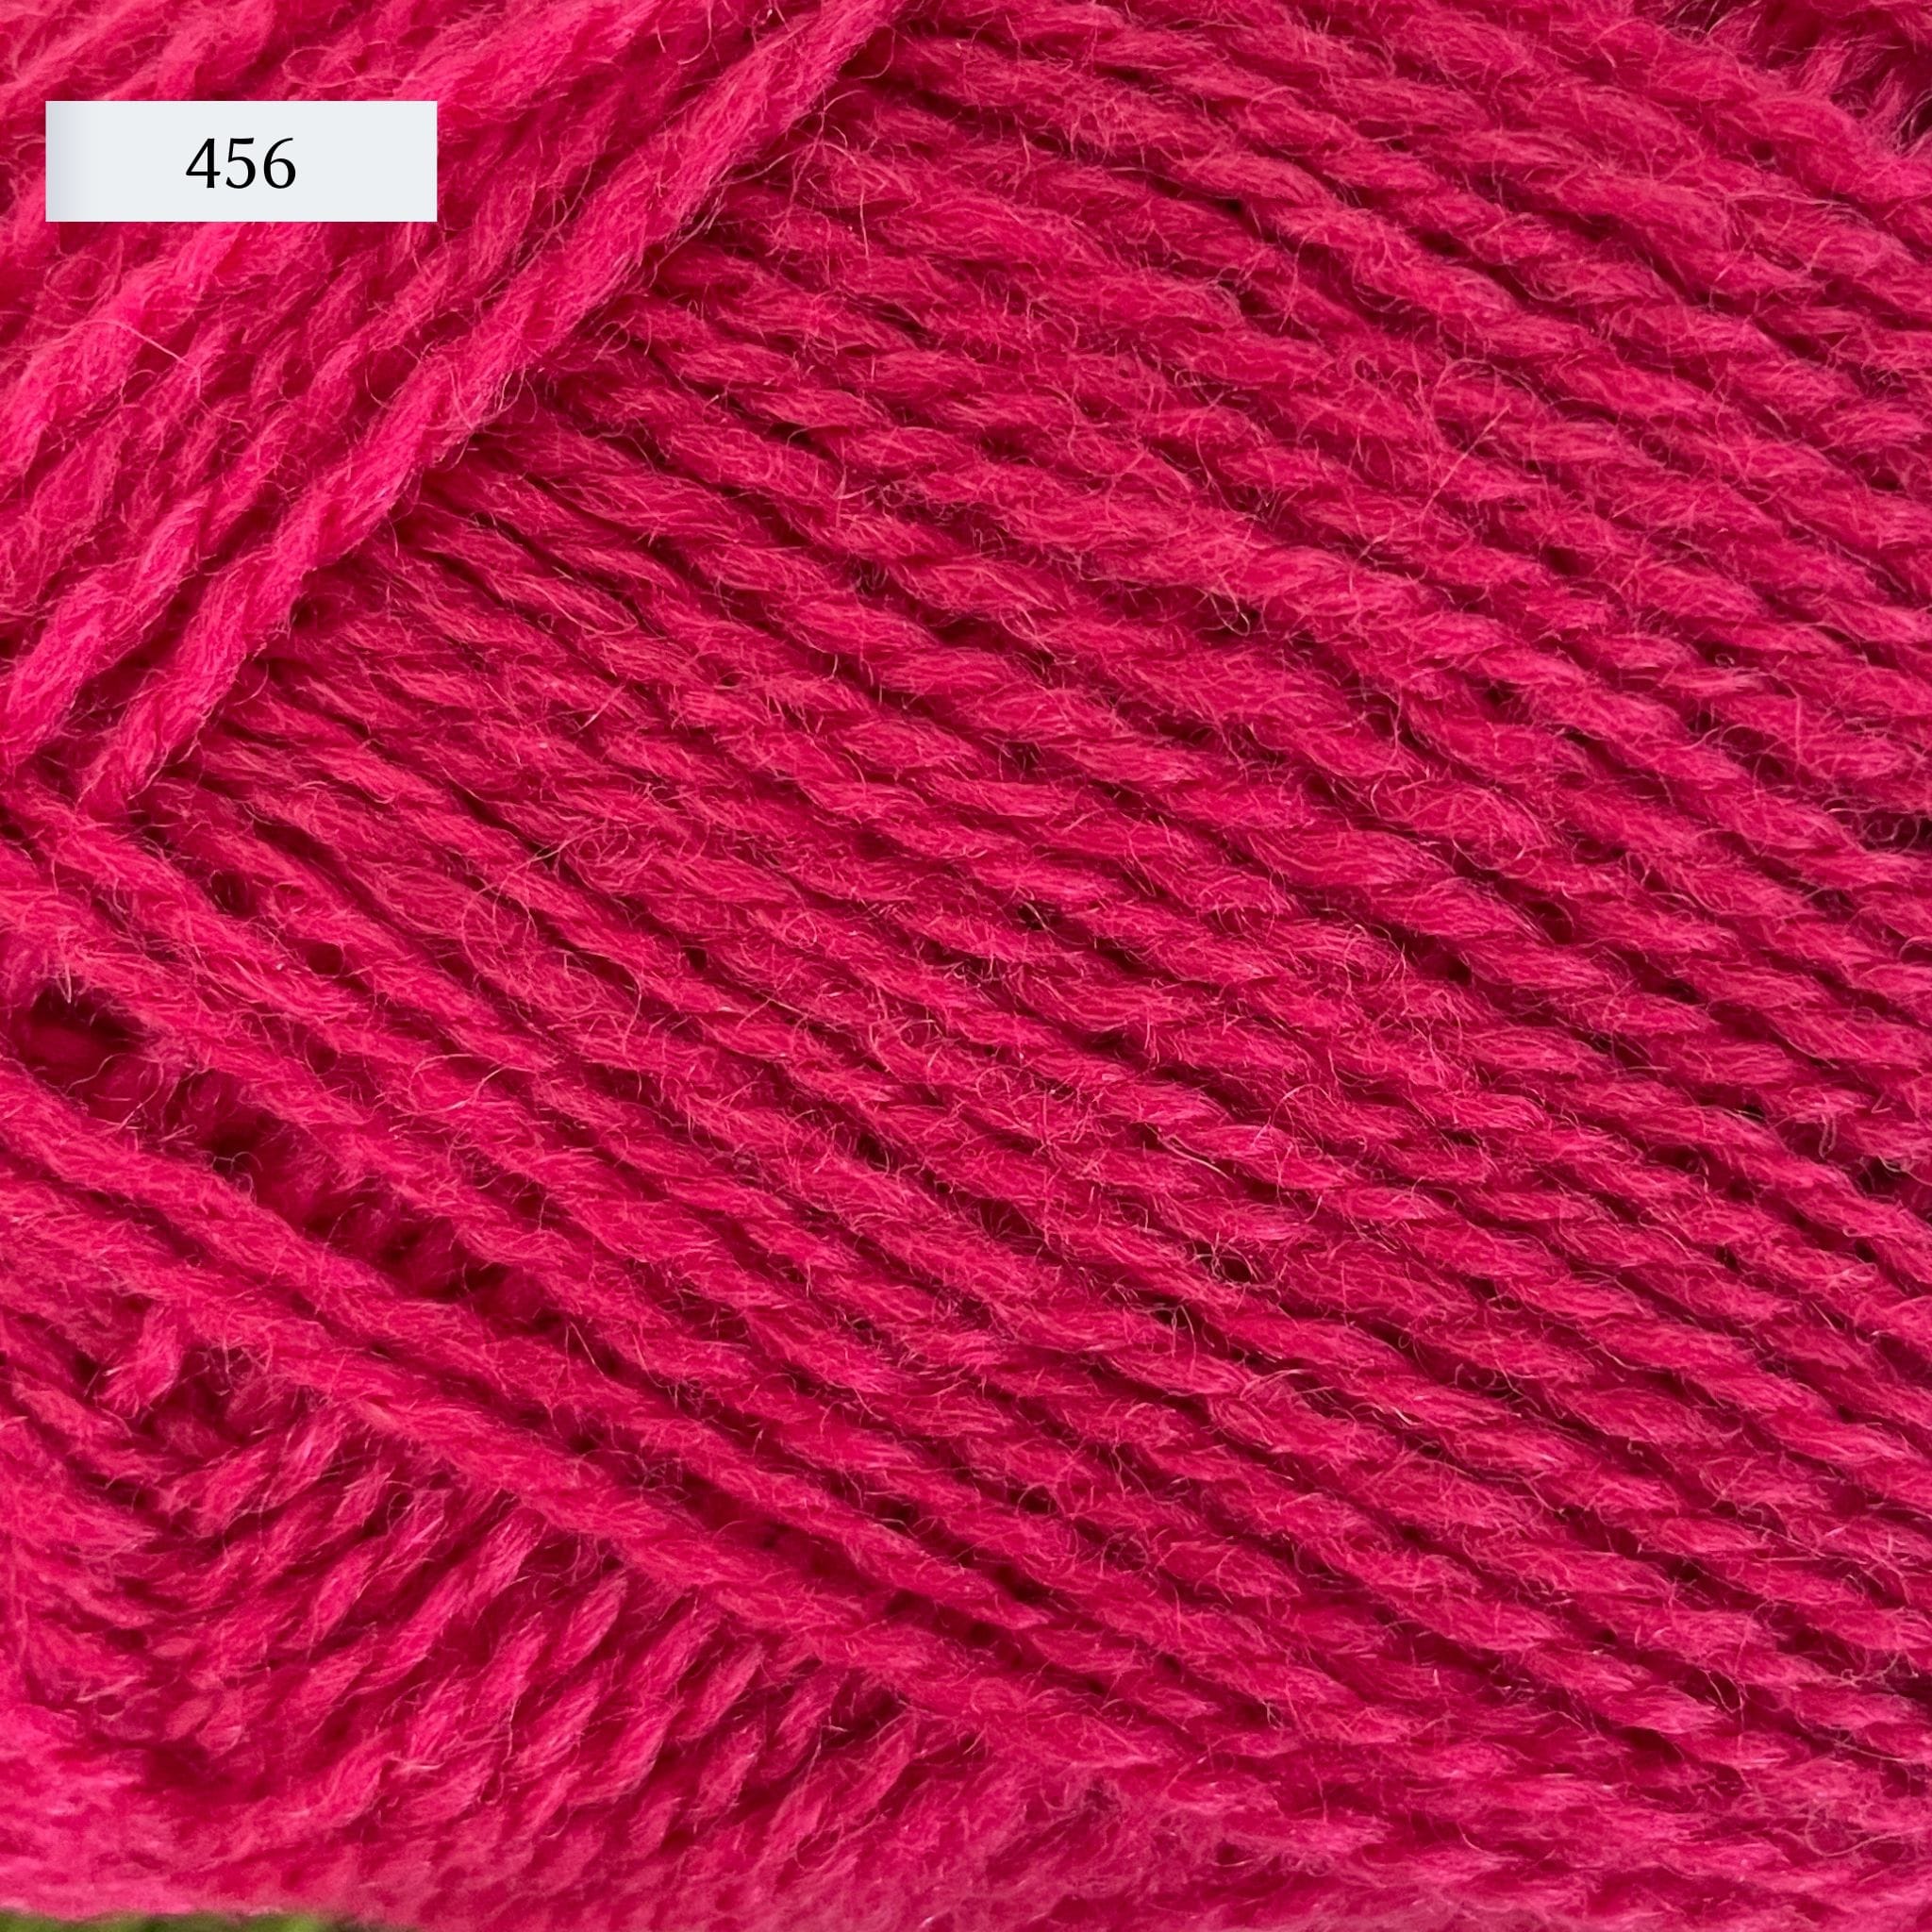 Rauma Finullgarn, a fingering/sport weight yarn, in color 456, a fuschia